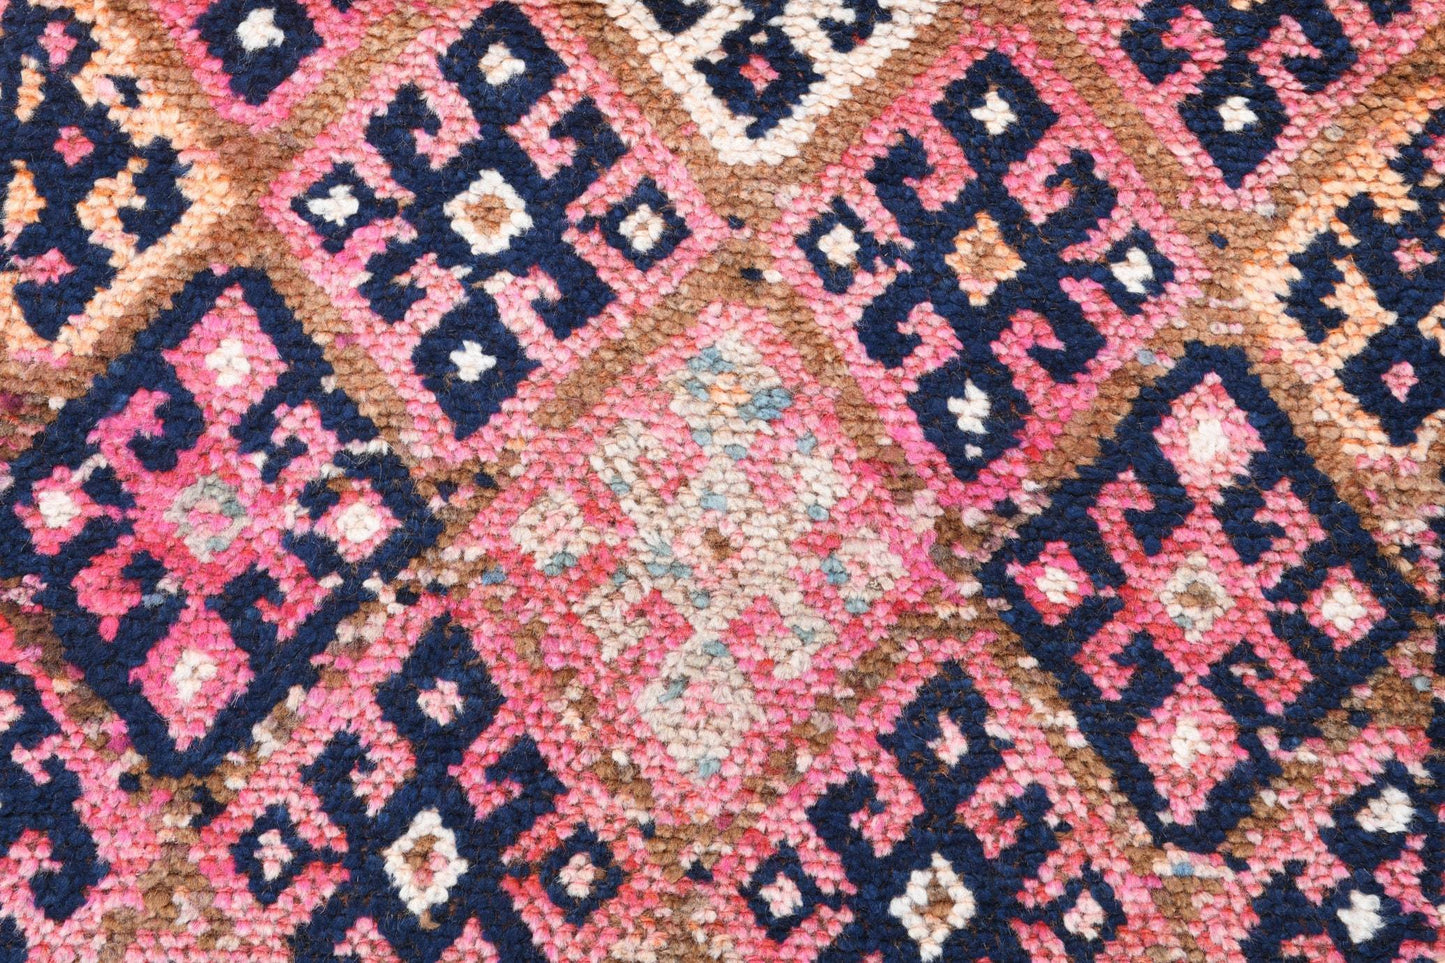 3' x 11' Pink Turkish Vintage Herki Rug  |  RugReform